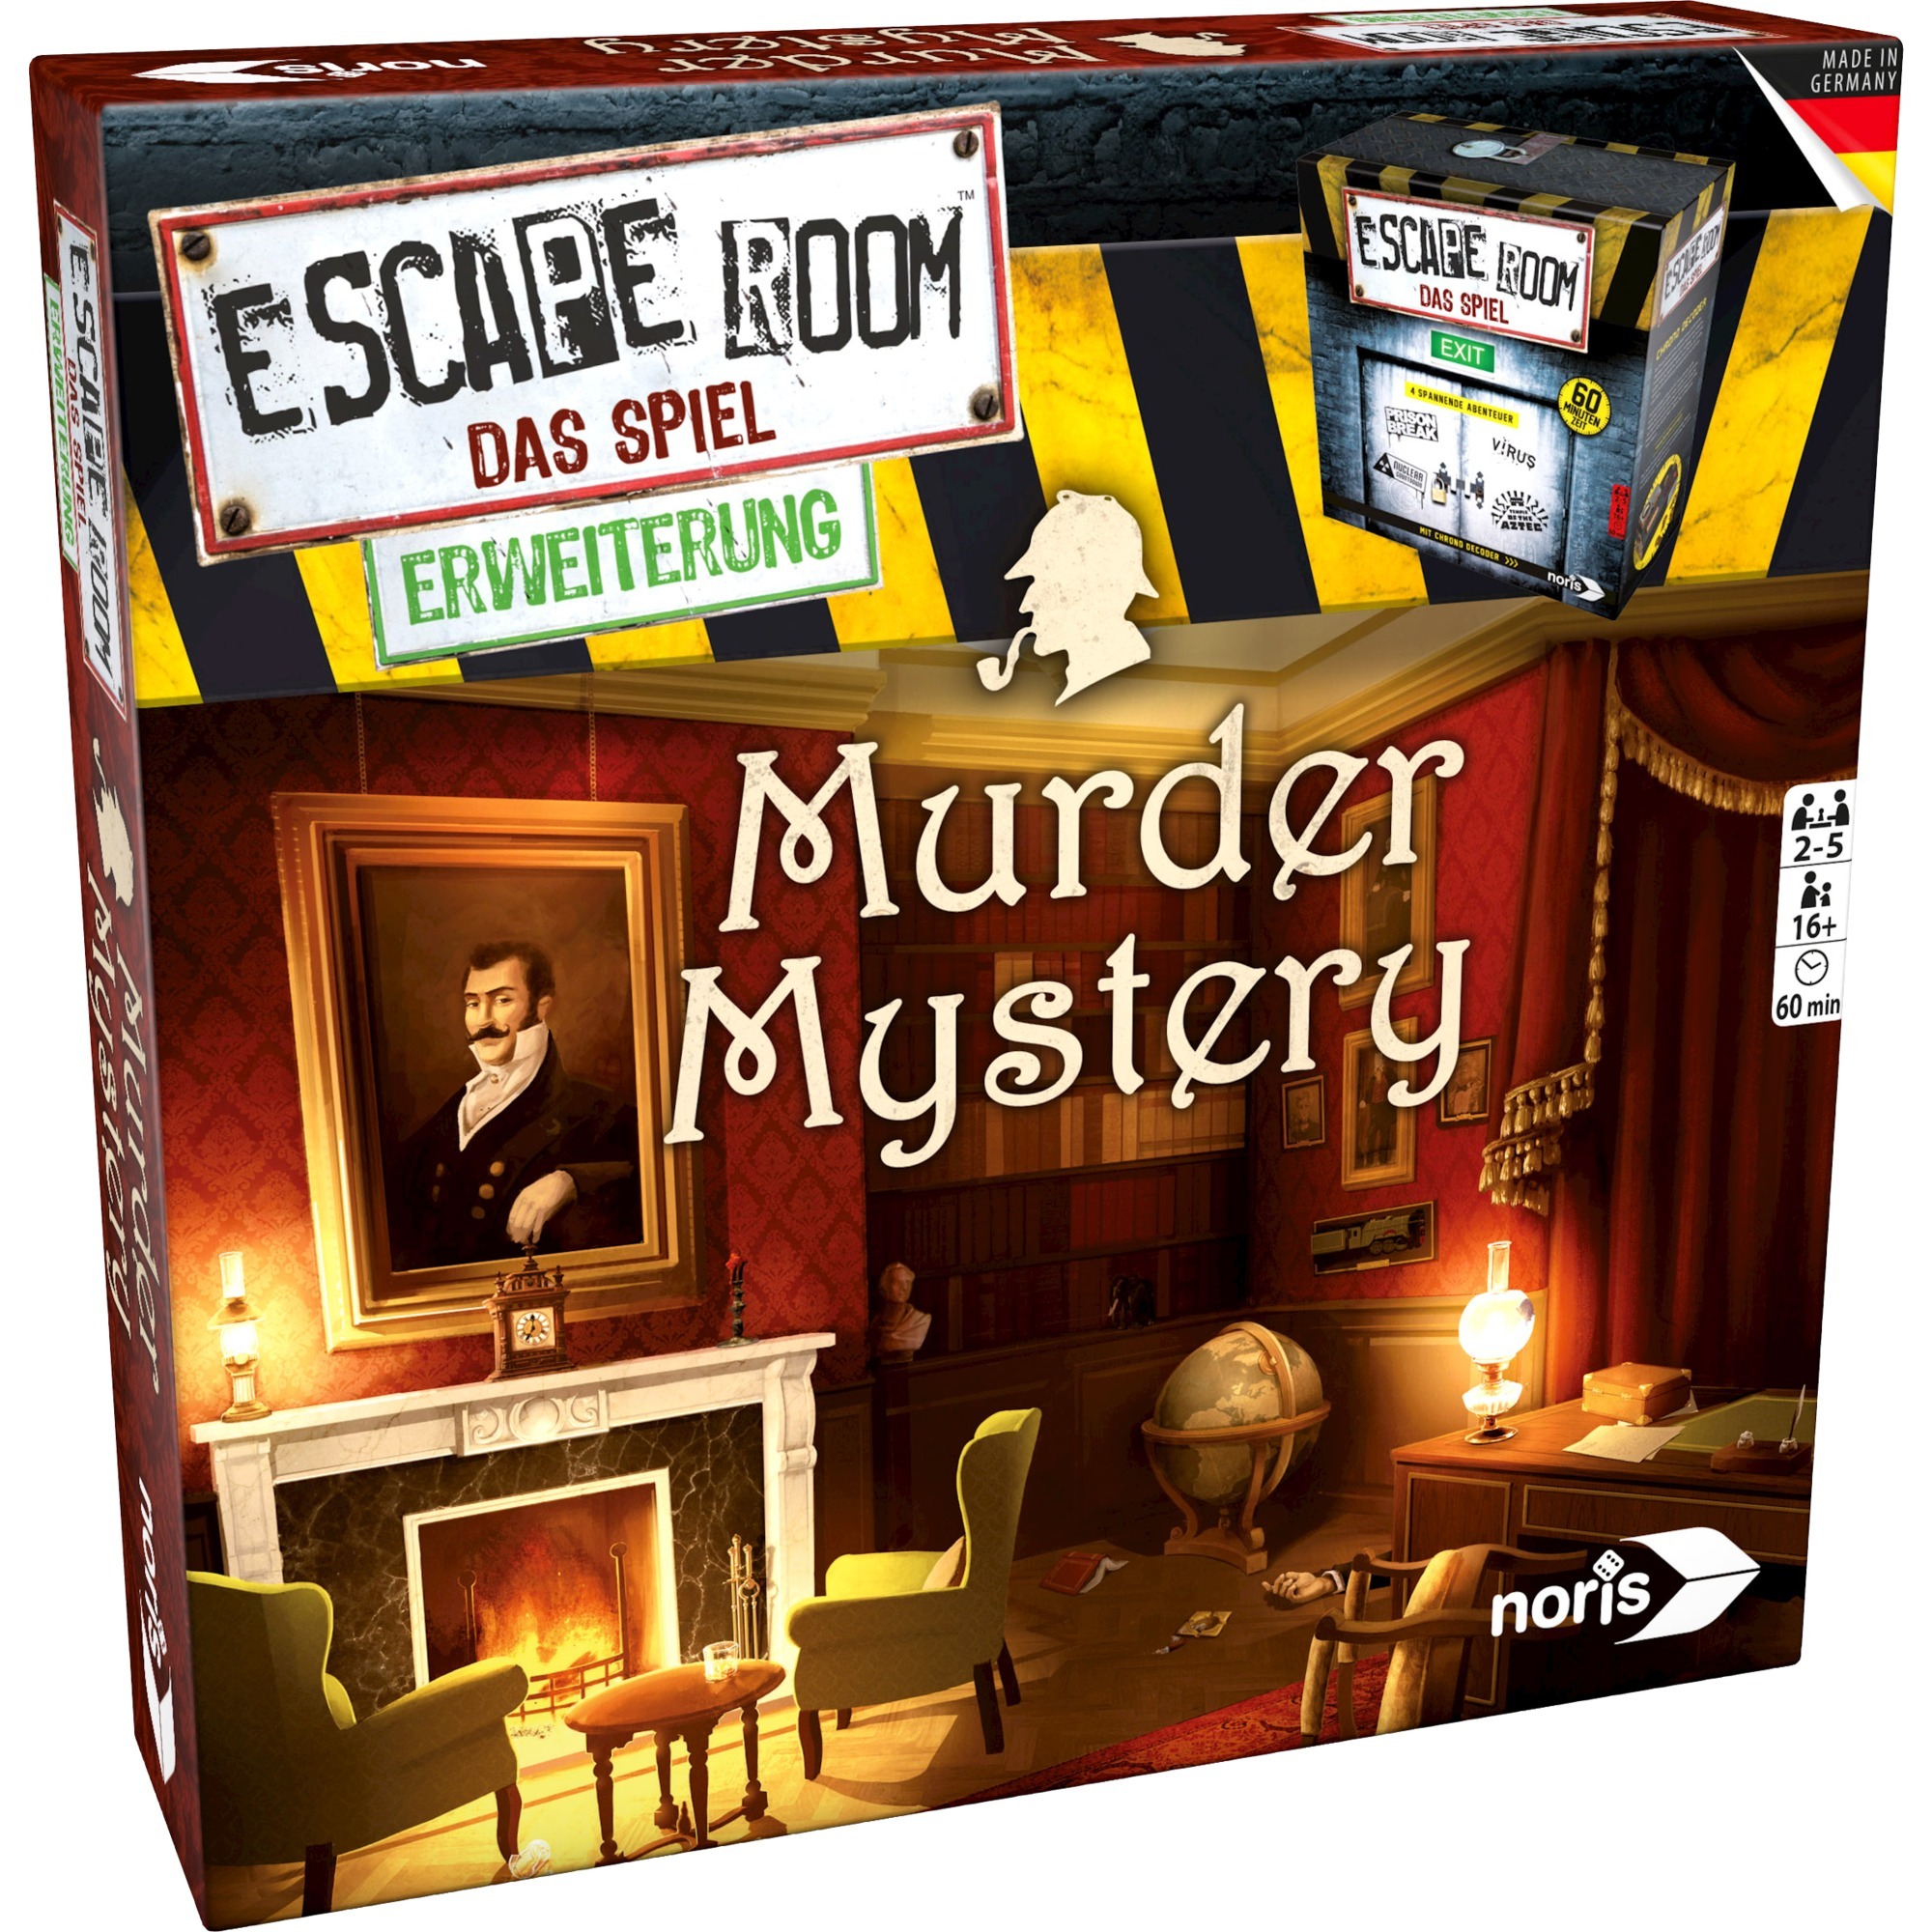 Image of Alternate - Escape Room: Murder Mystery, Partyspiel online einkaufen bei Alternate